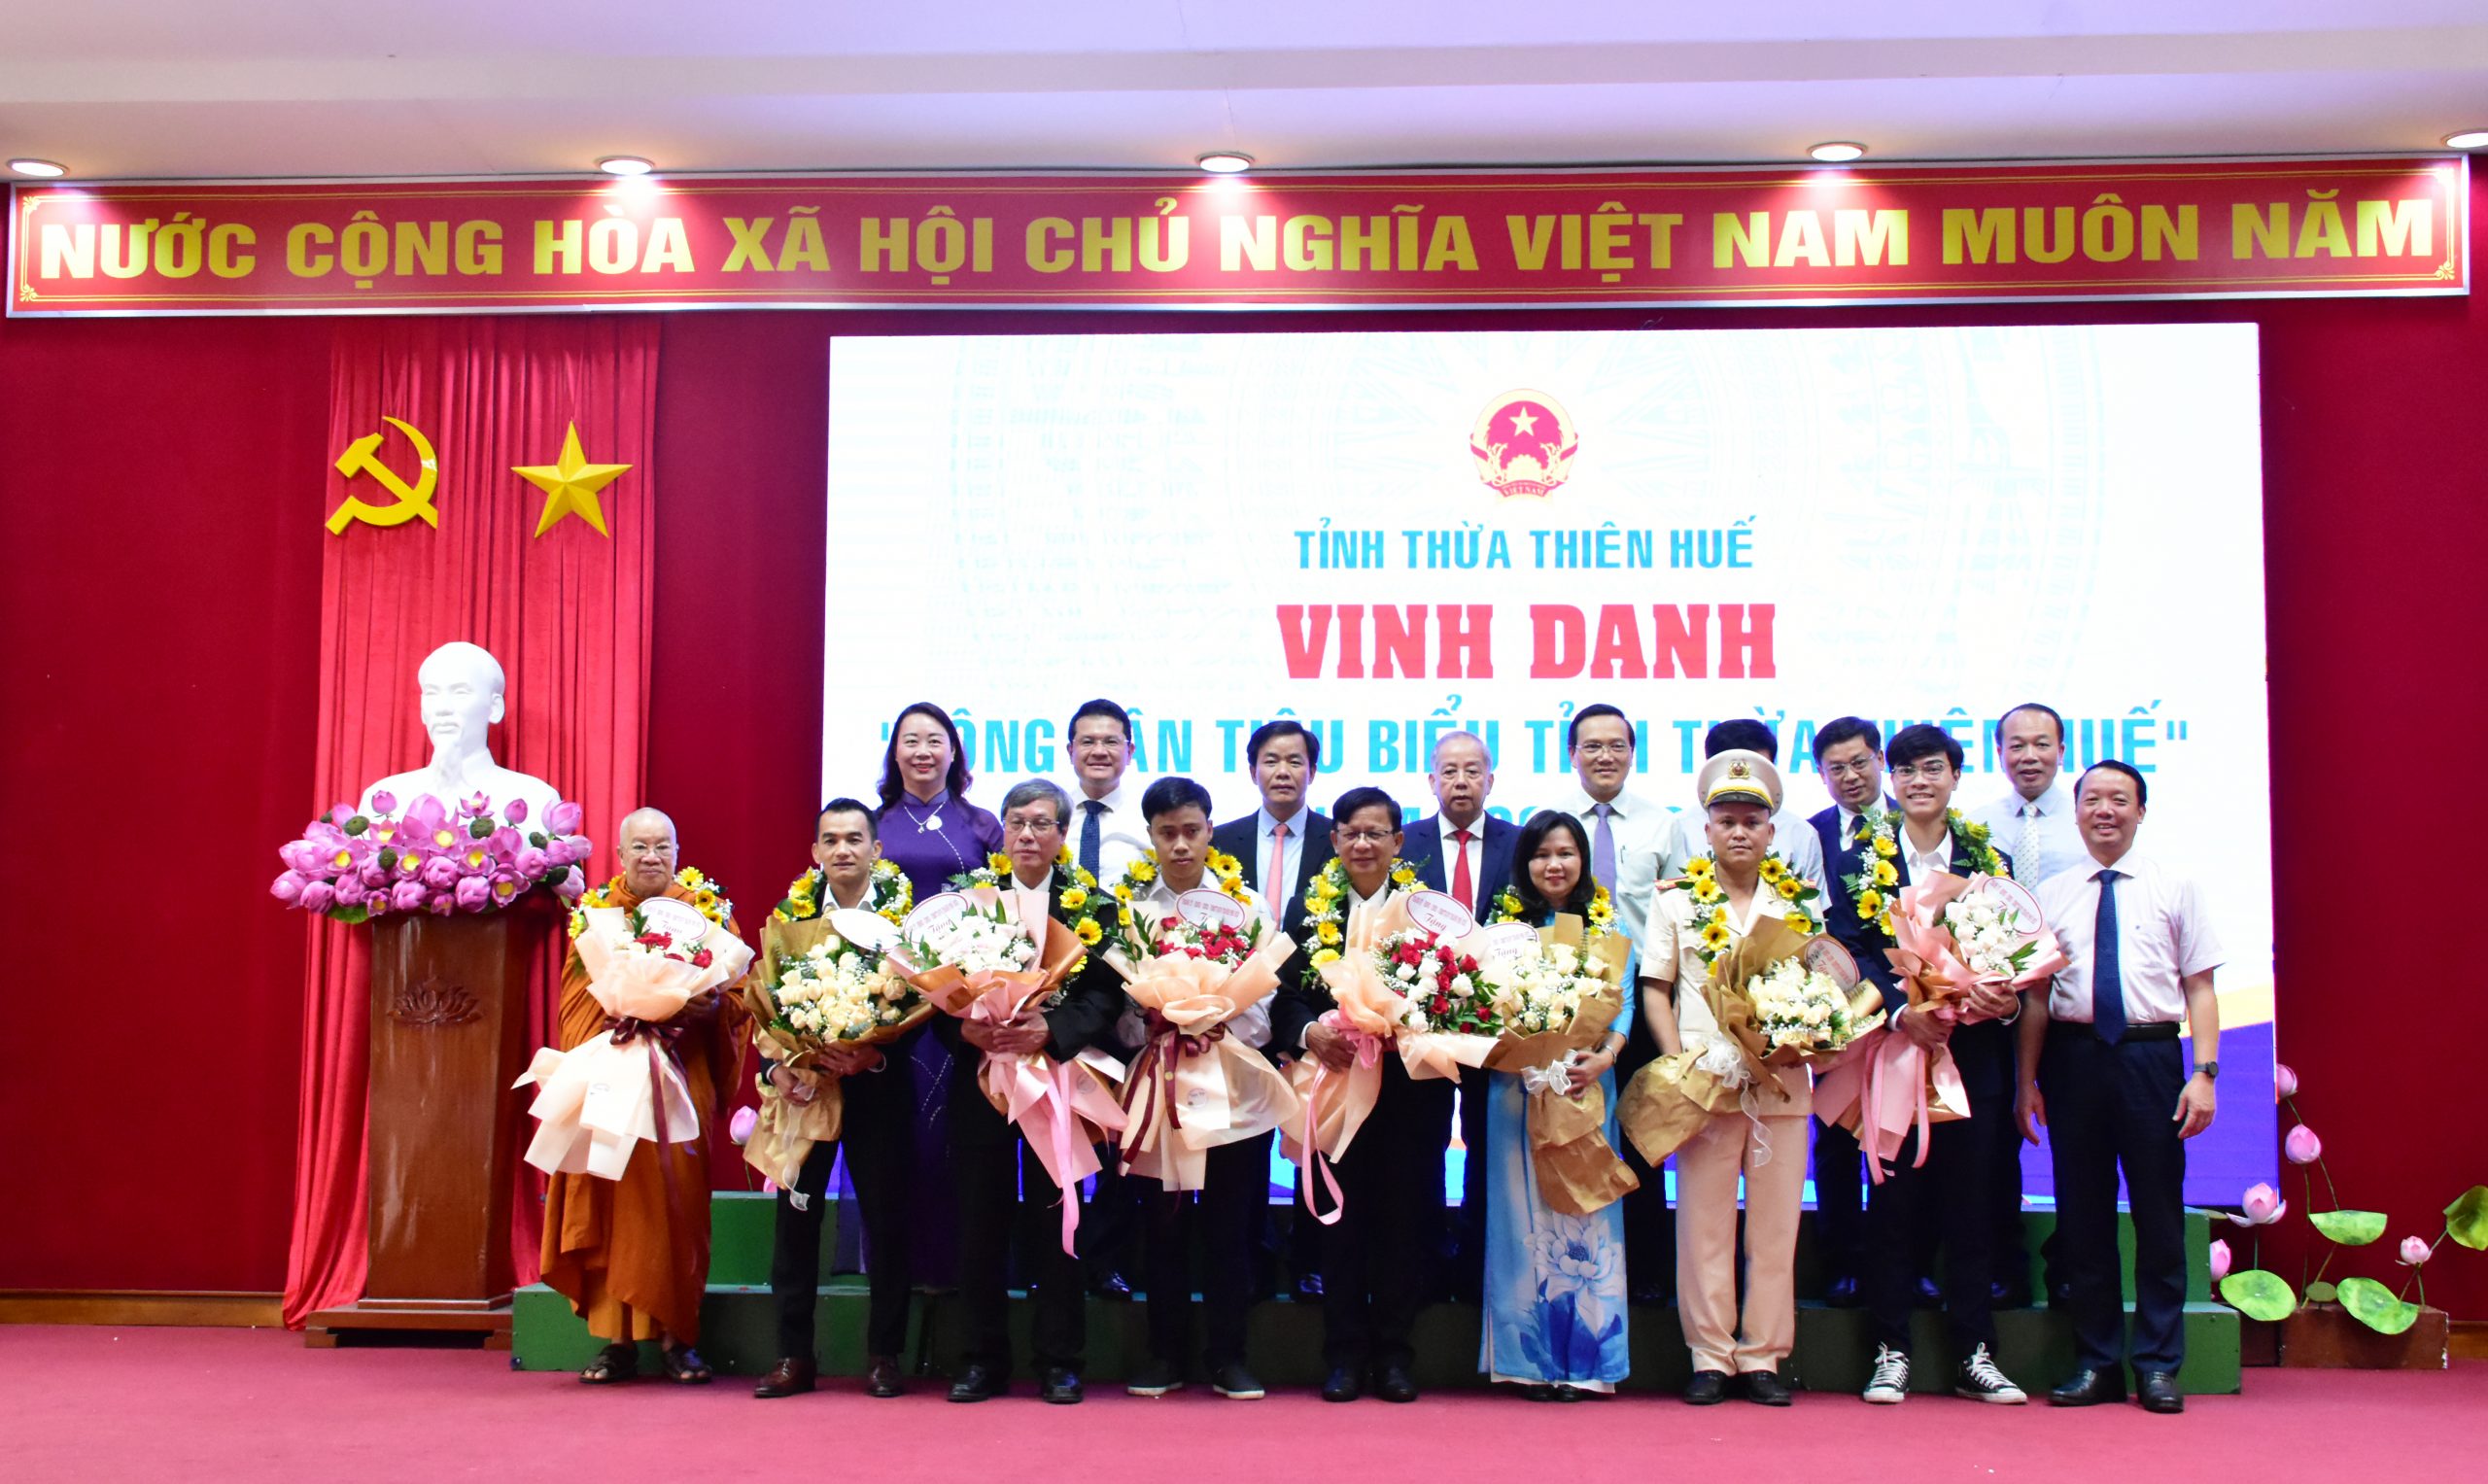 Lãnh đạo tỉnh Thừa Thiên Huế tặng hoa chúc mừng, chụp ảnh lưu niệm cùng các công dân tiêu biểu được vinh danh.